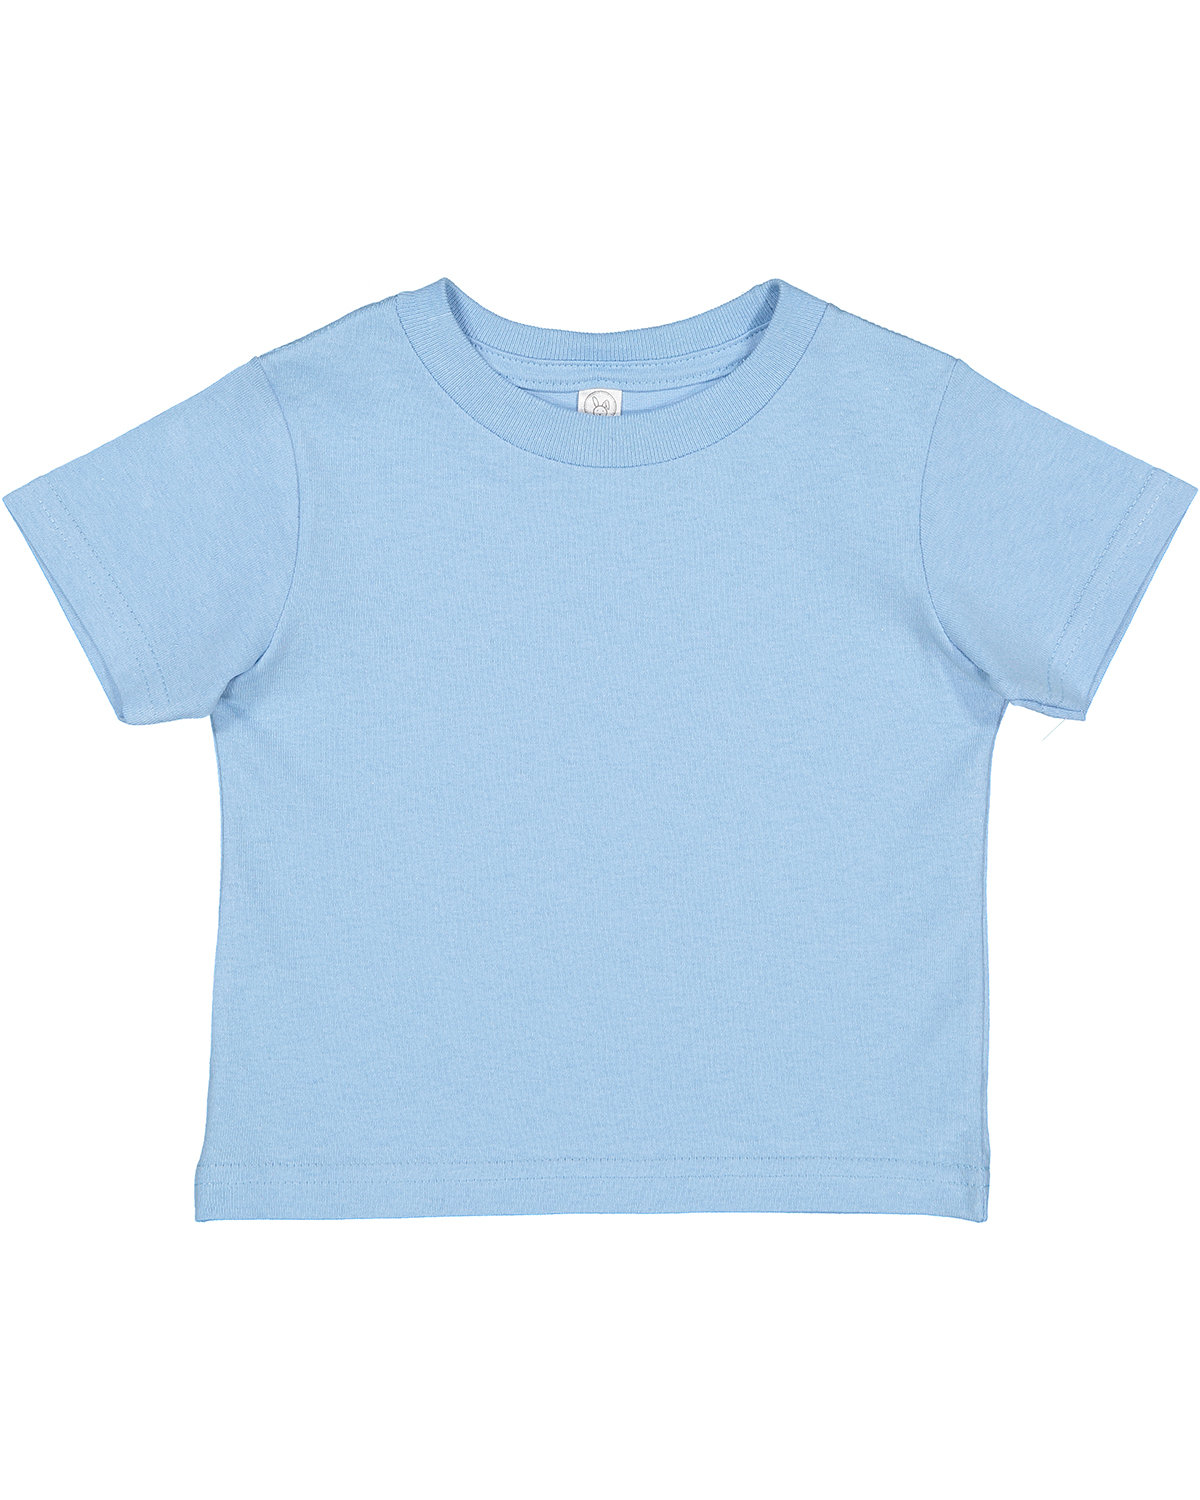 Rabbit Skins Toddler Cotton Jersey T-Shirt LIGHT BLUE 